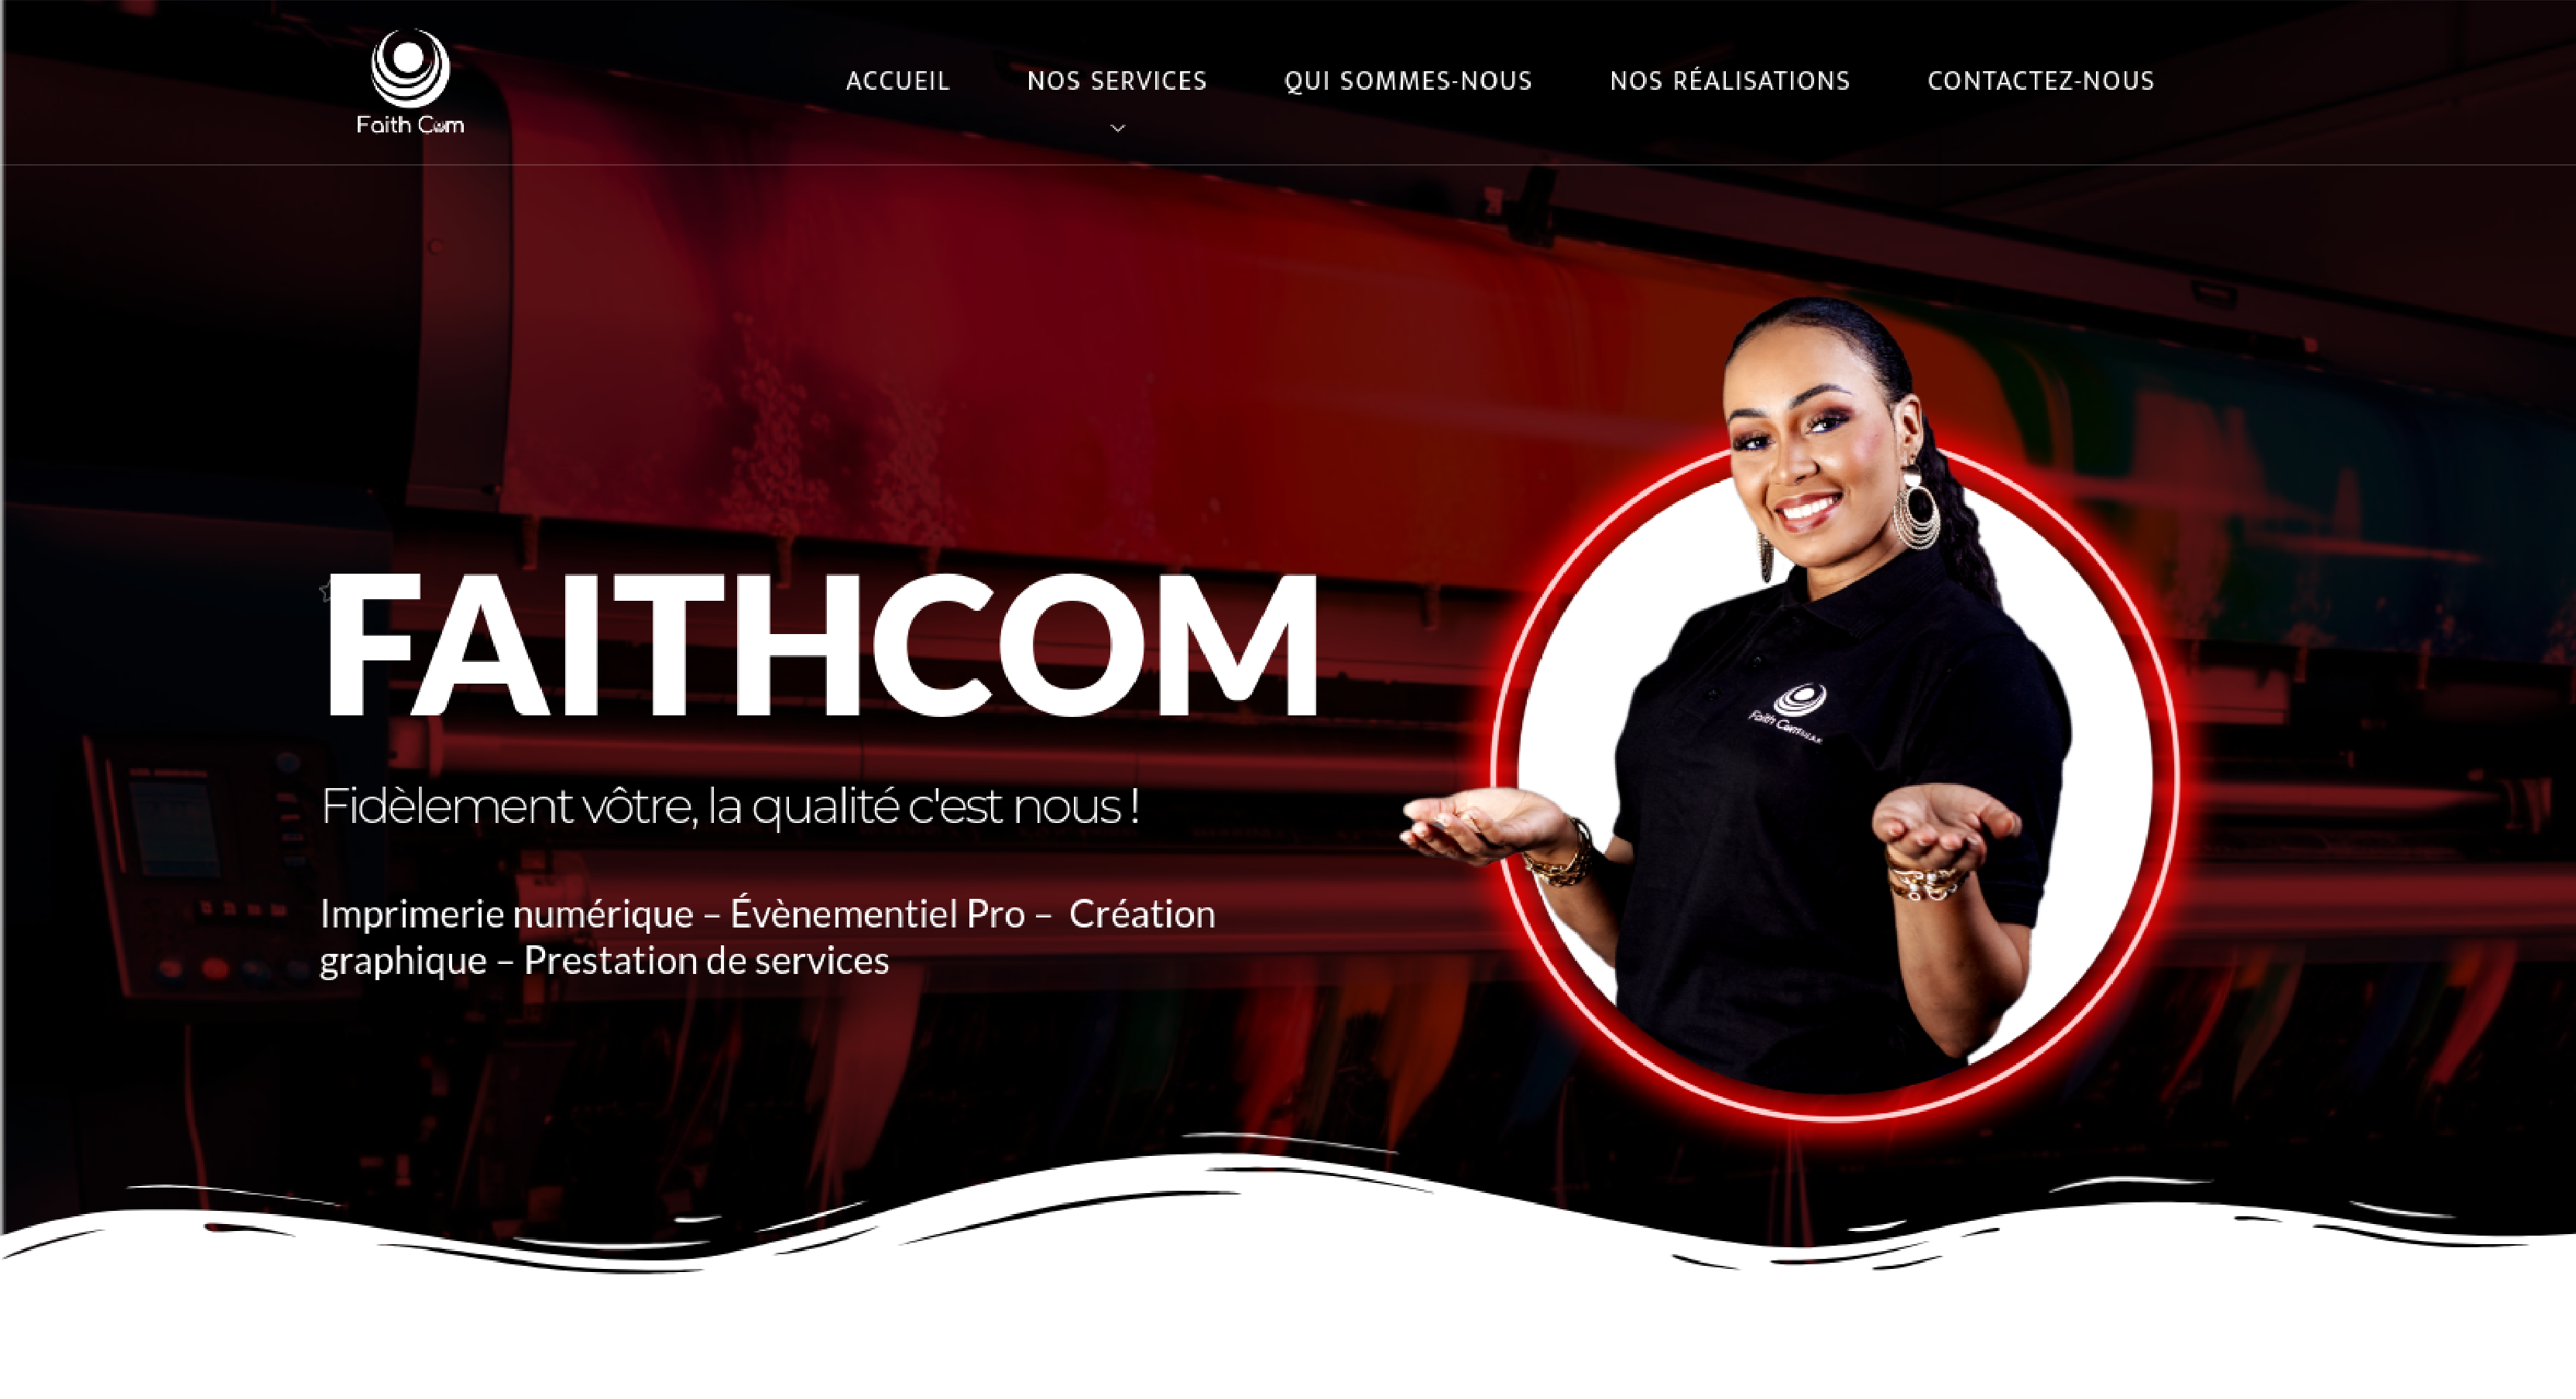 Design du site web Faithcommunication par Kemsoft